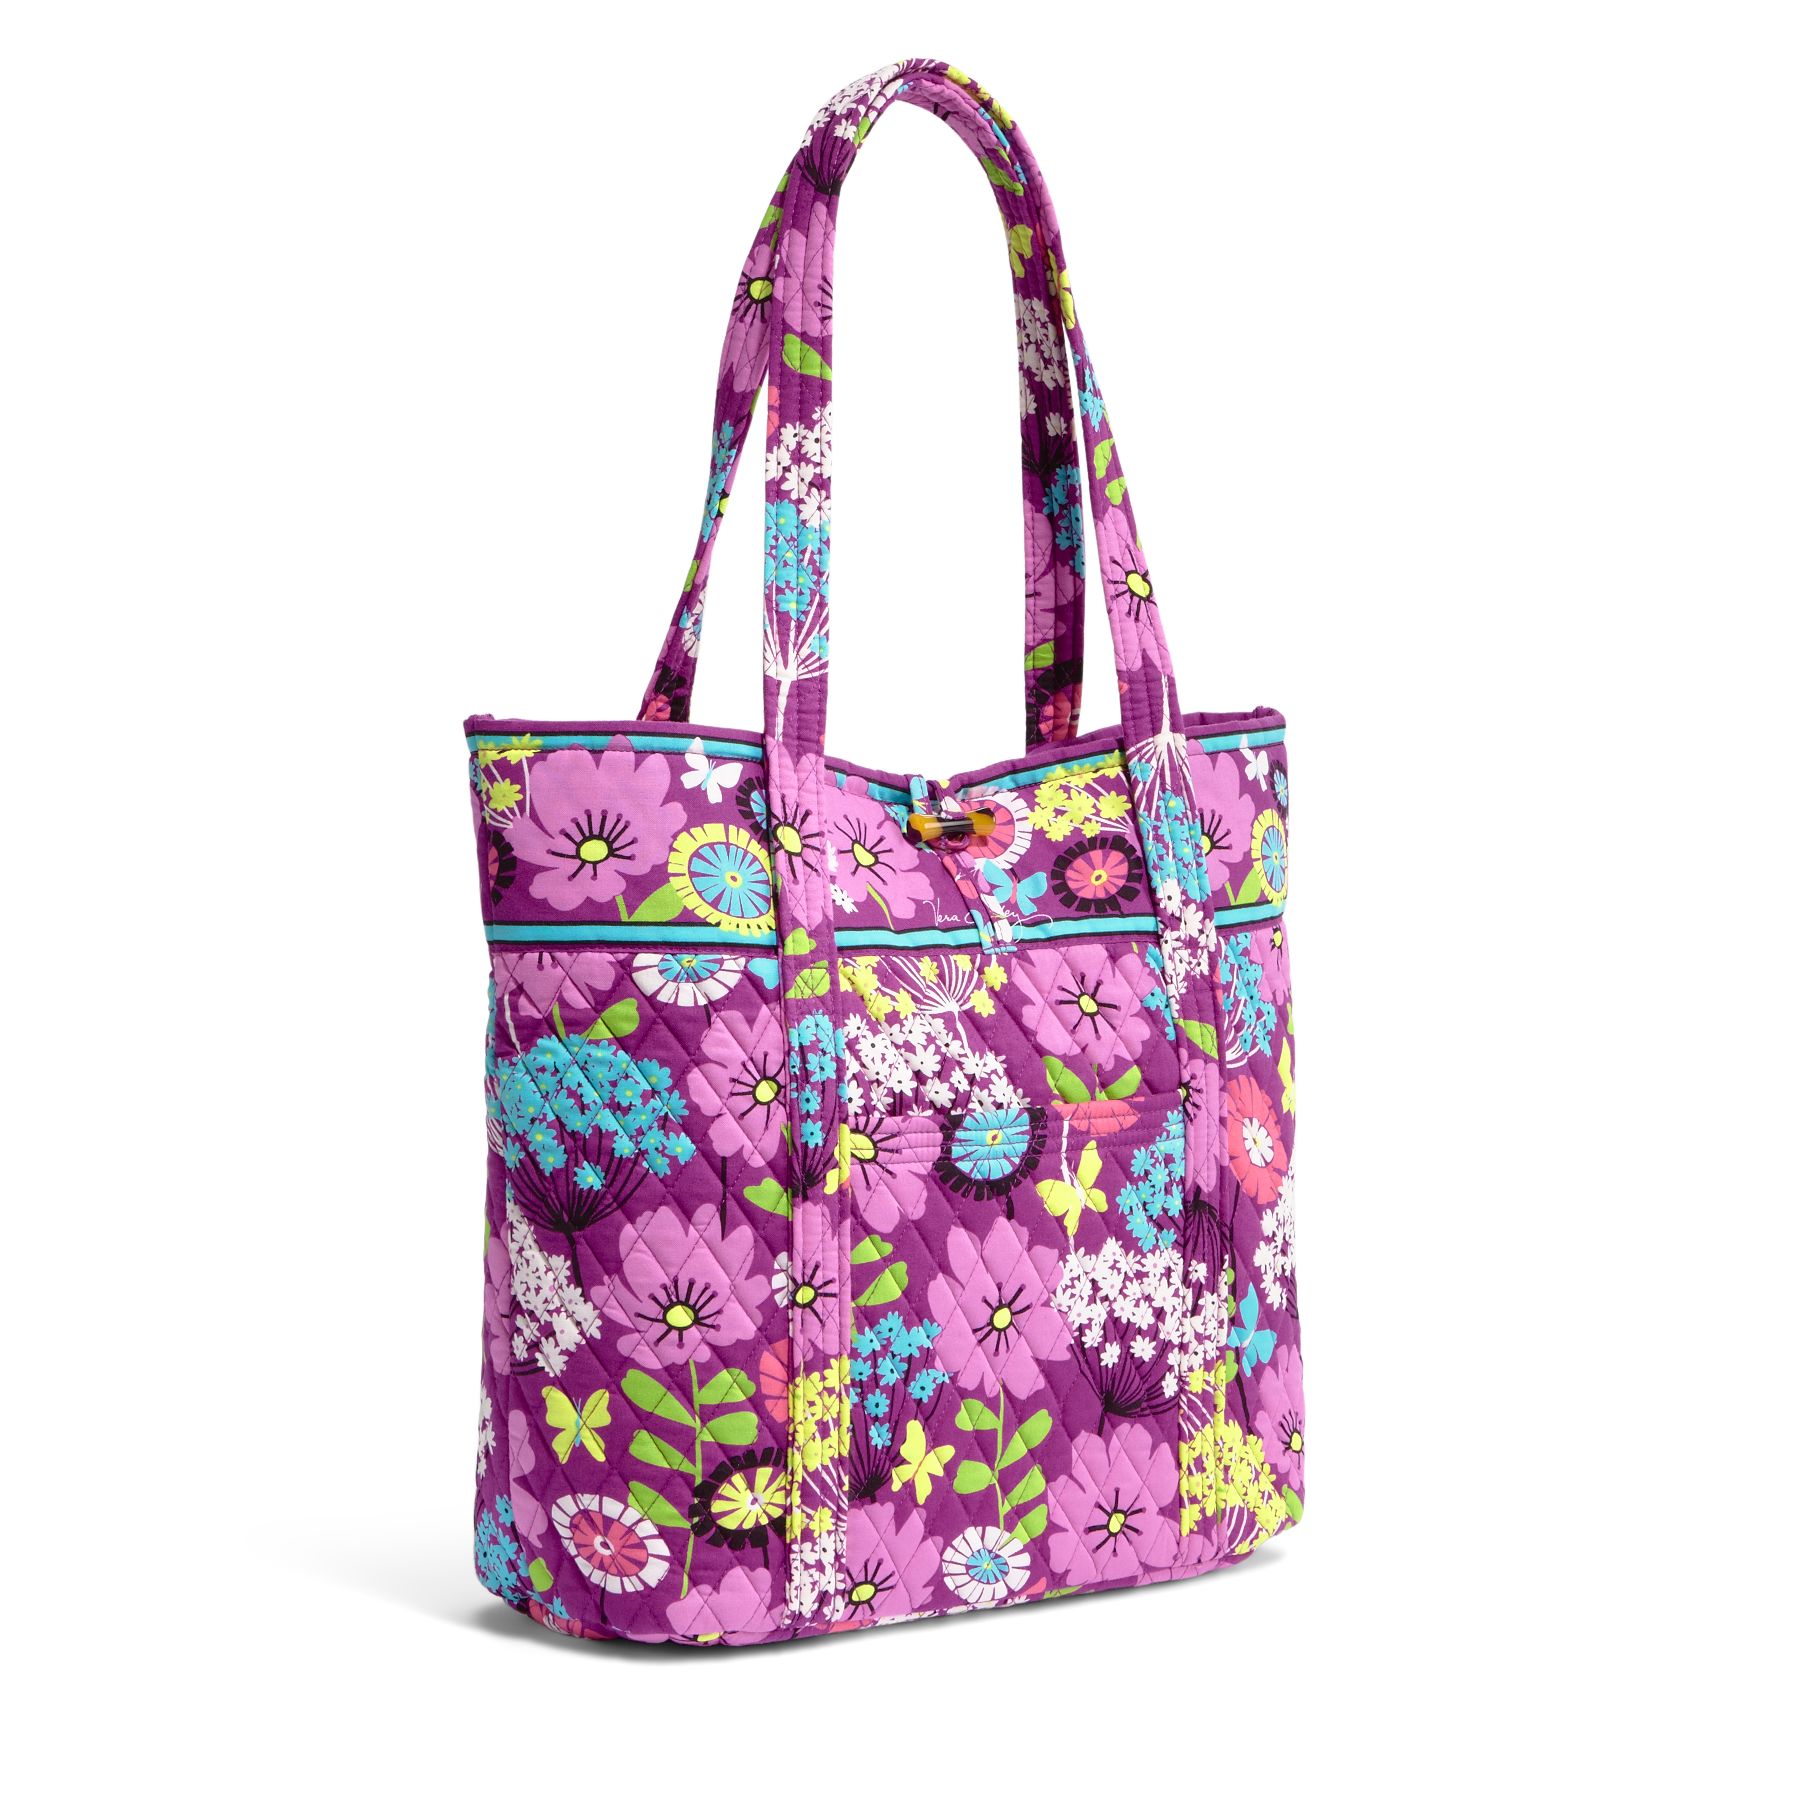 Vera Bradley Vera Tote Travel Bag Flutterby NWT You Choose | eBay